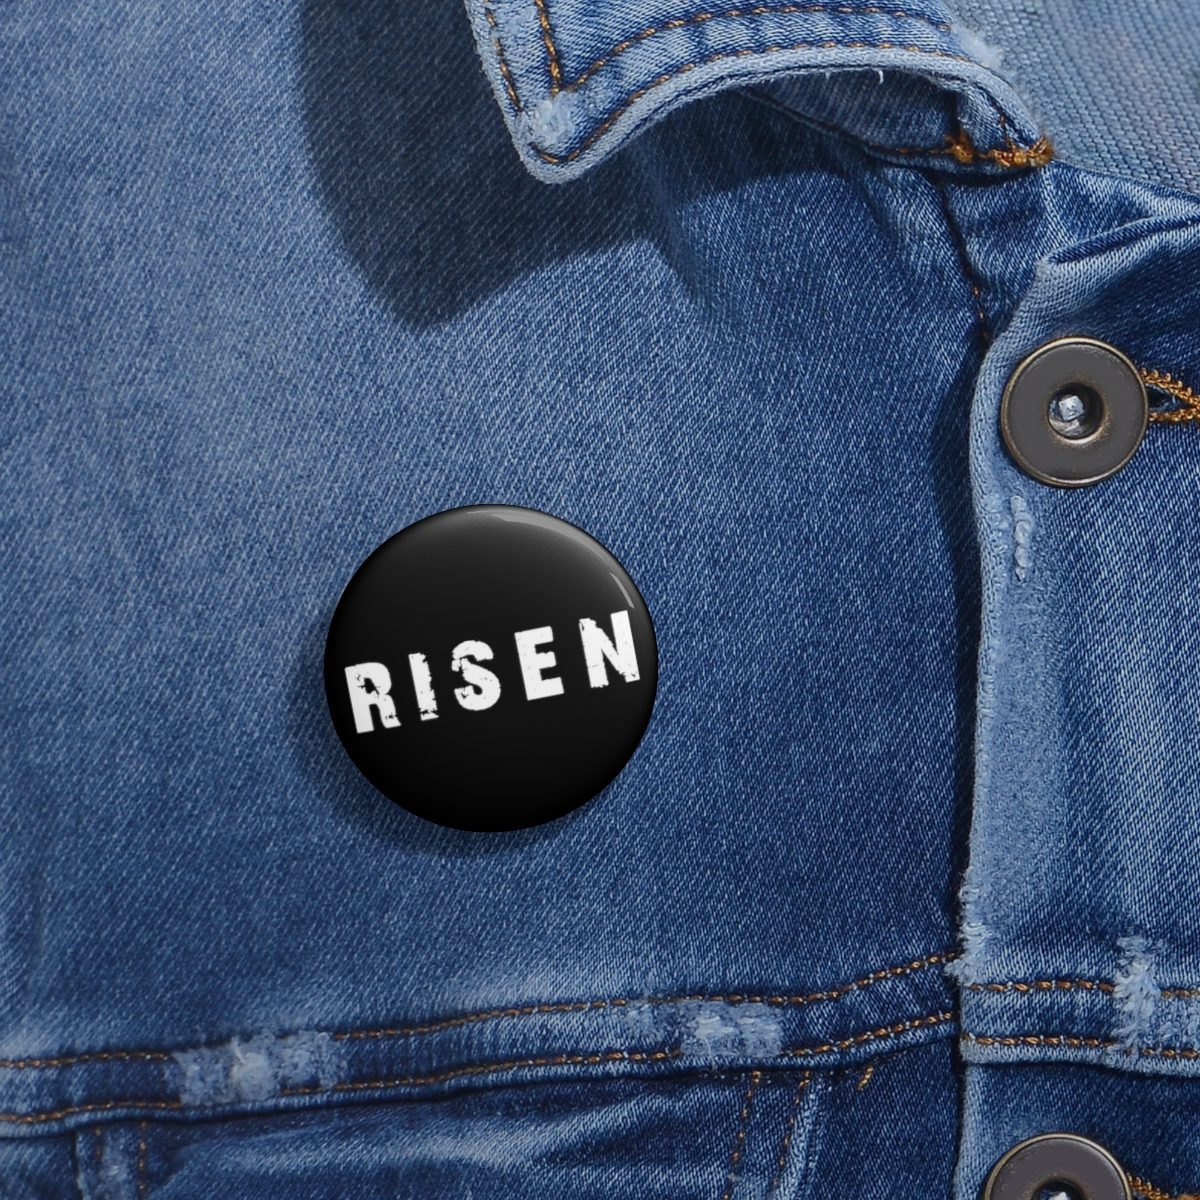 Risen – Logo Pin Buttons